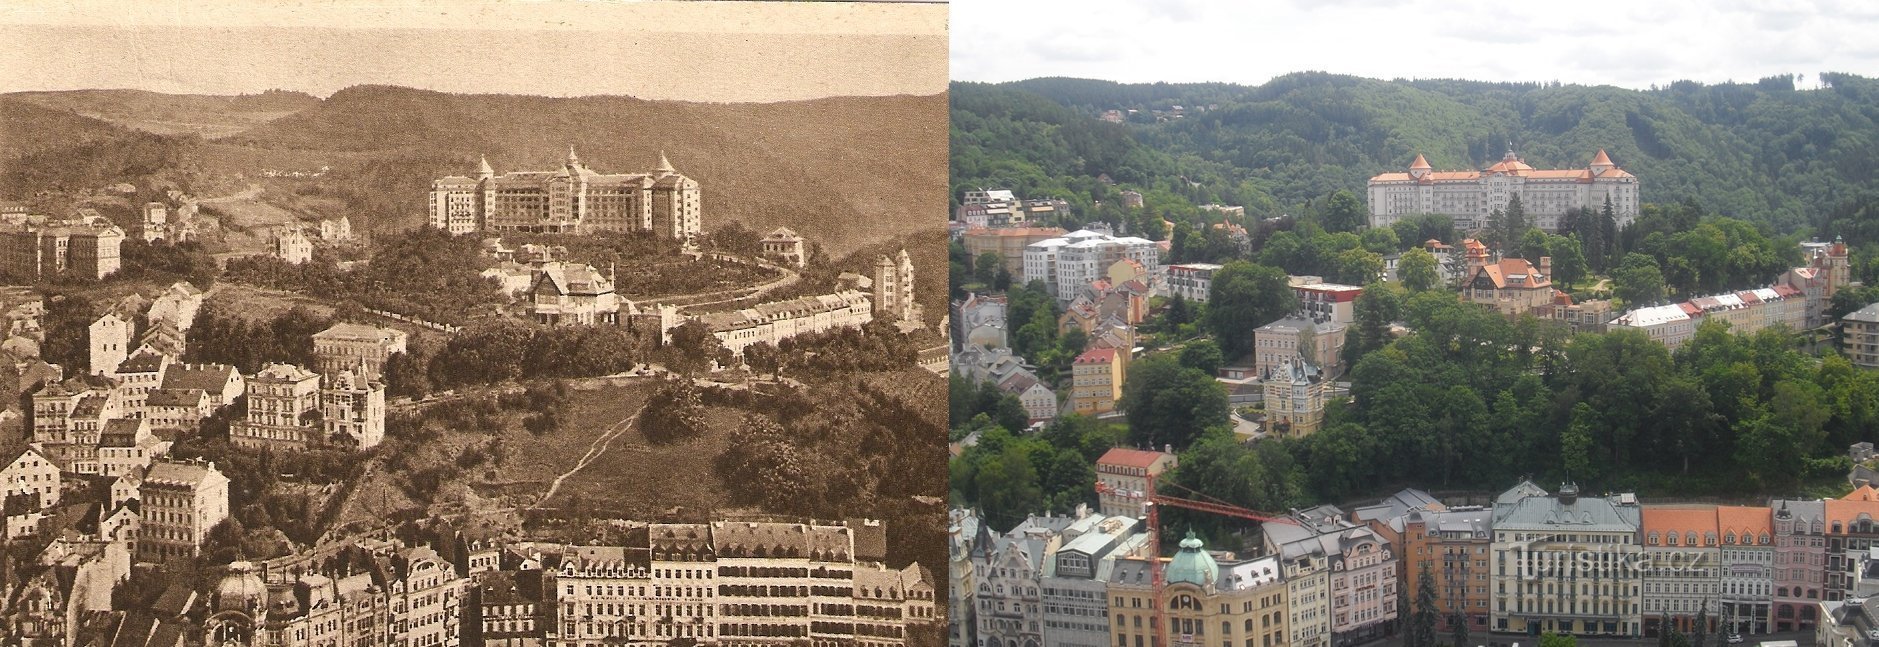 Karlovy Vary på ældre synspunkter og aktuelle fotos